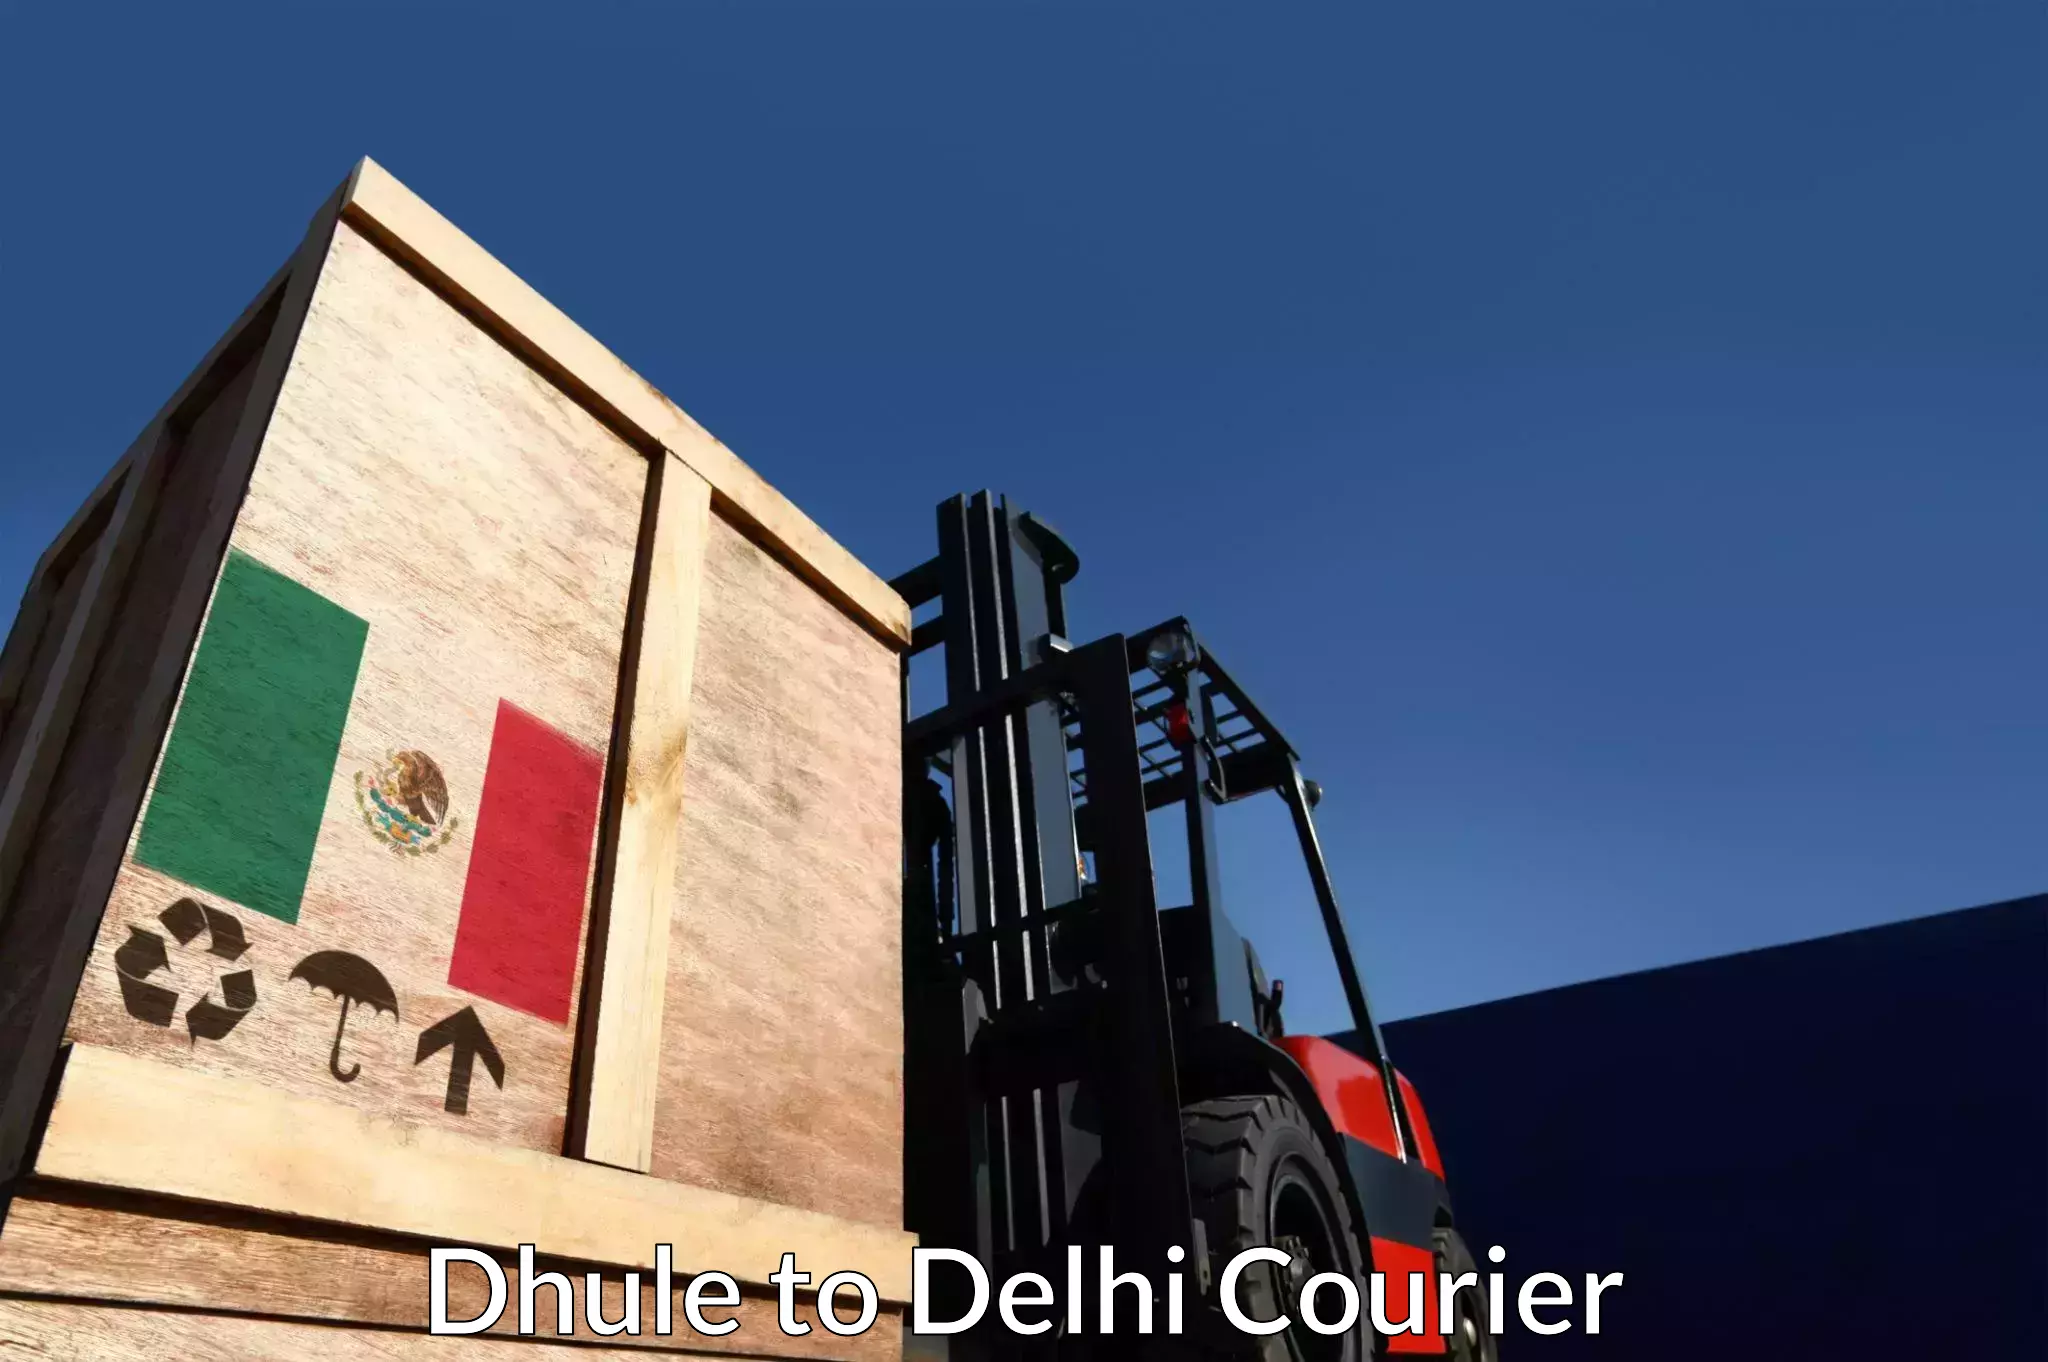 Efficient parcel service Dhule to IIT Delhi